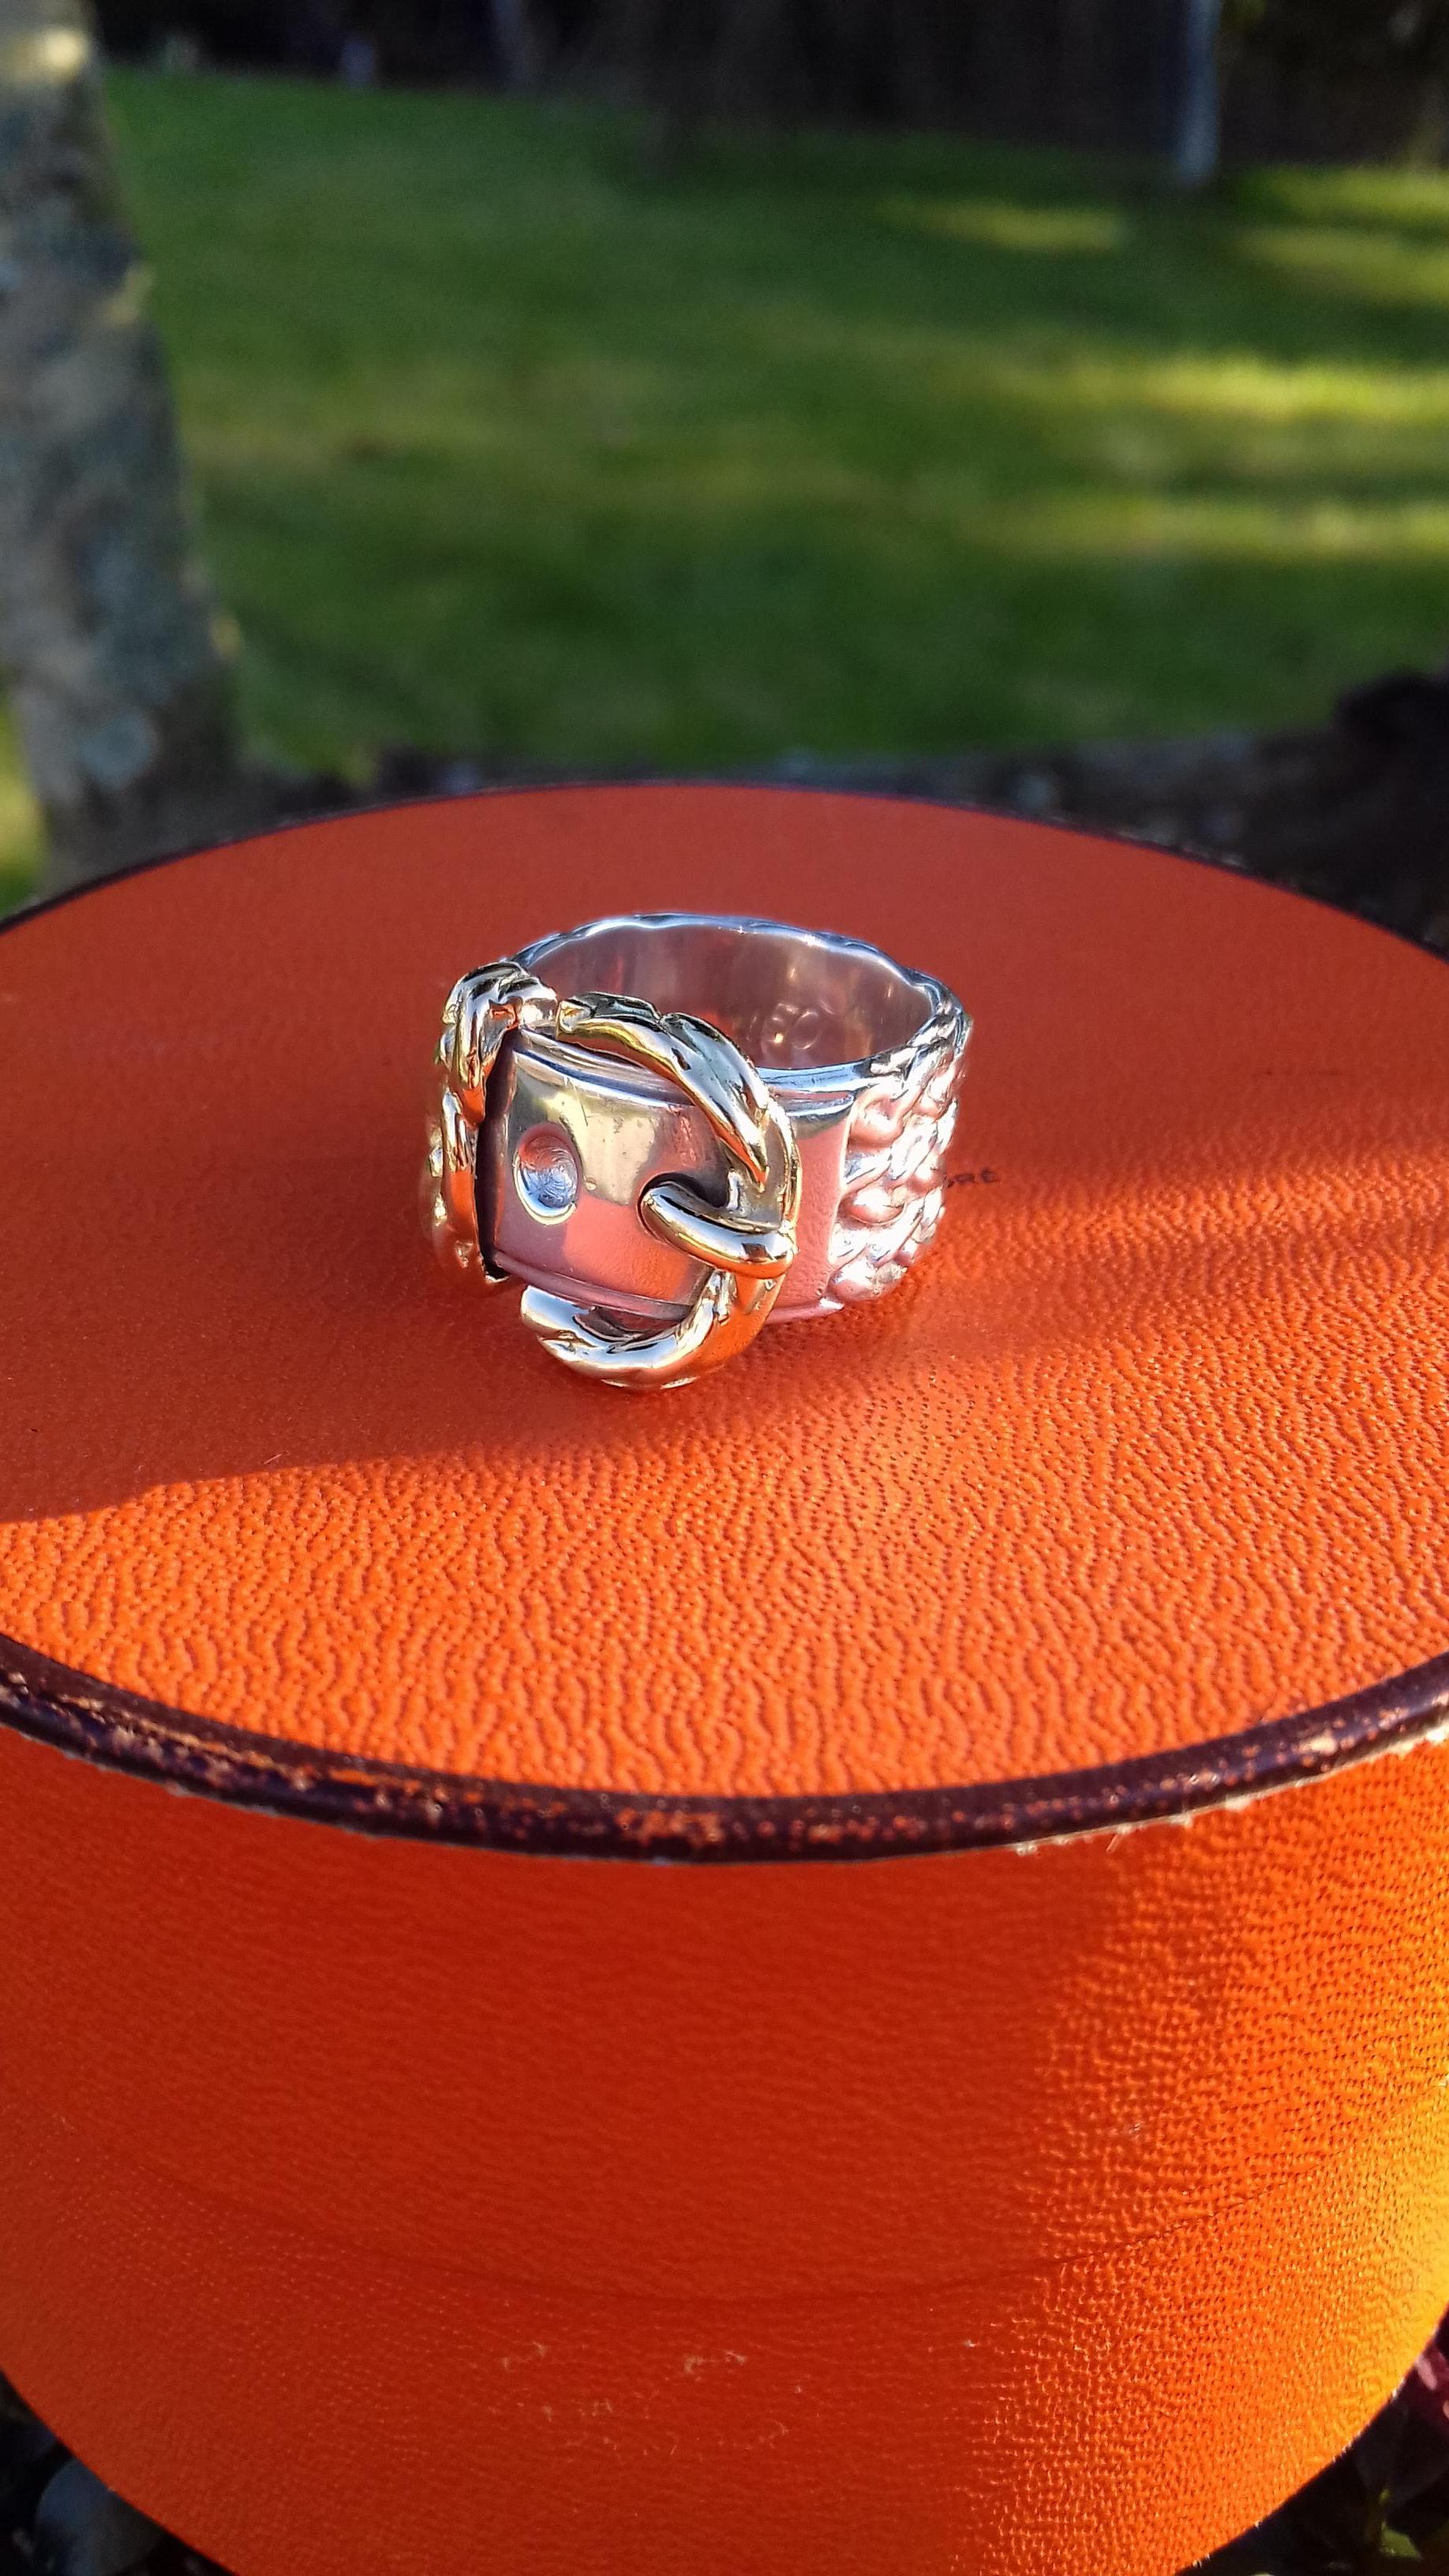 Seltener und schöner authentischer Hermès Ring

Muster: Der Ringkörper ist aus geflochtenem Silber, mit einer Gürtelschnalle auf der Vorderseite

Kann auch als Kopftuchring verwendet werden 

Hergestellt aus Silber und Gold

Farben: versilbert und